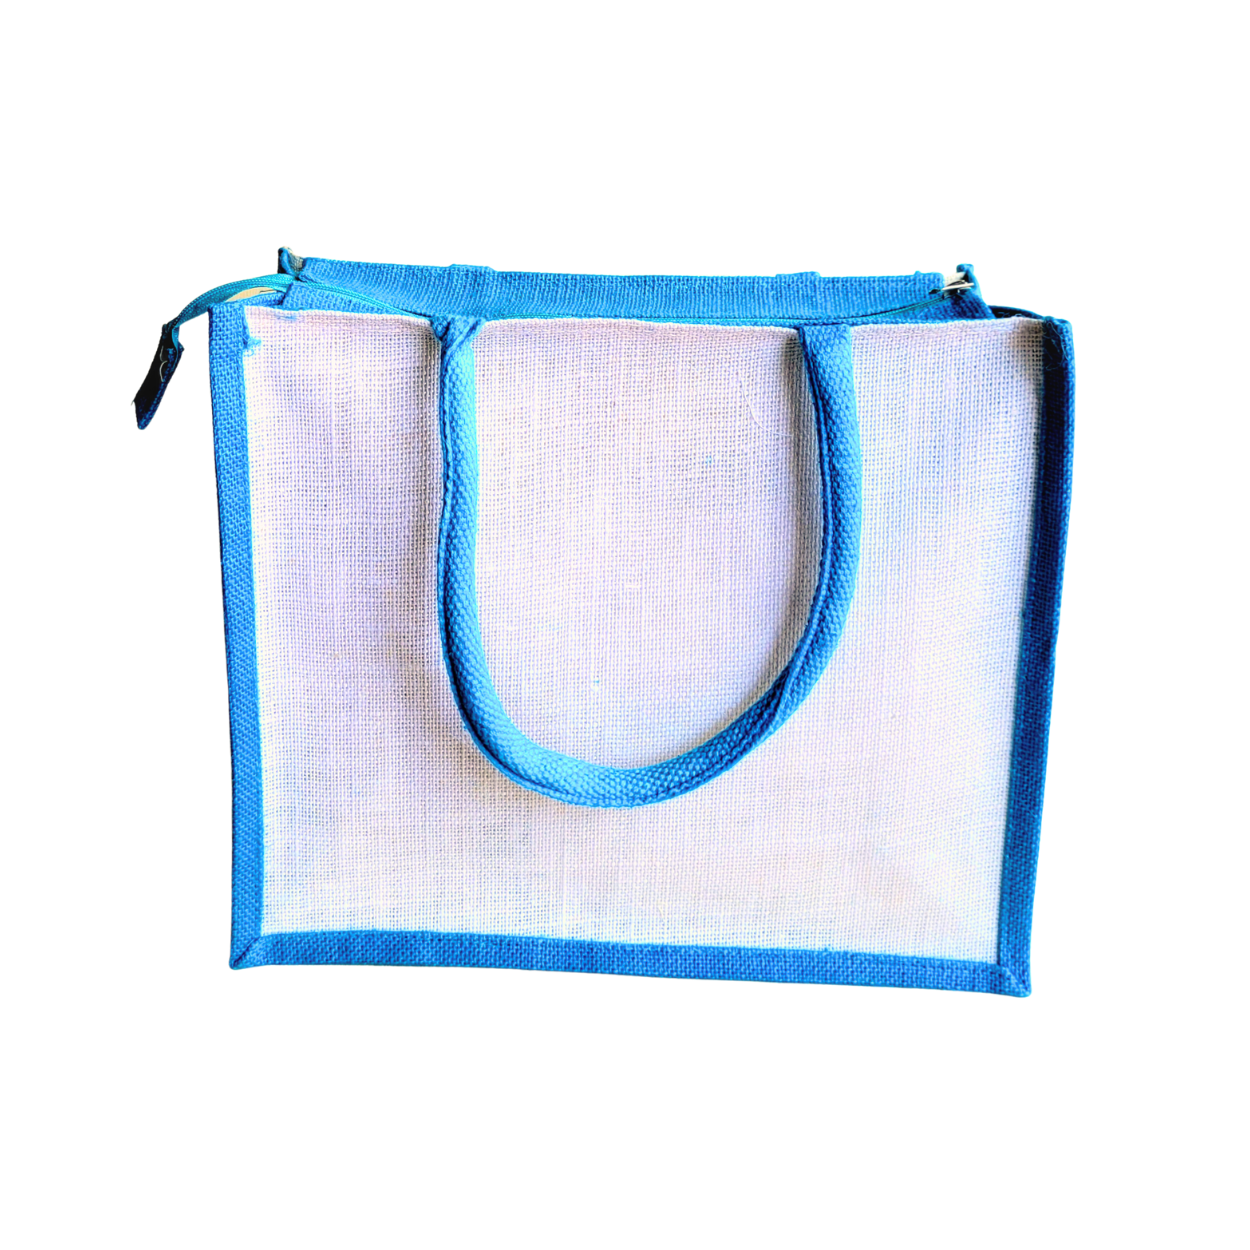 Printed Jute Shopping Bag - Chevron Teal Blue Large